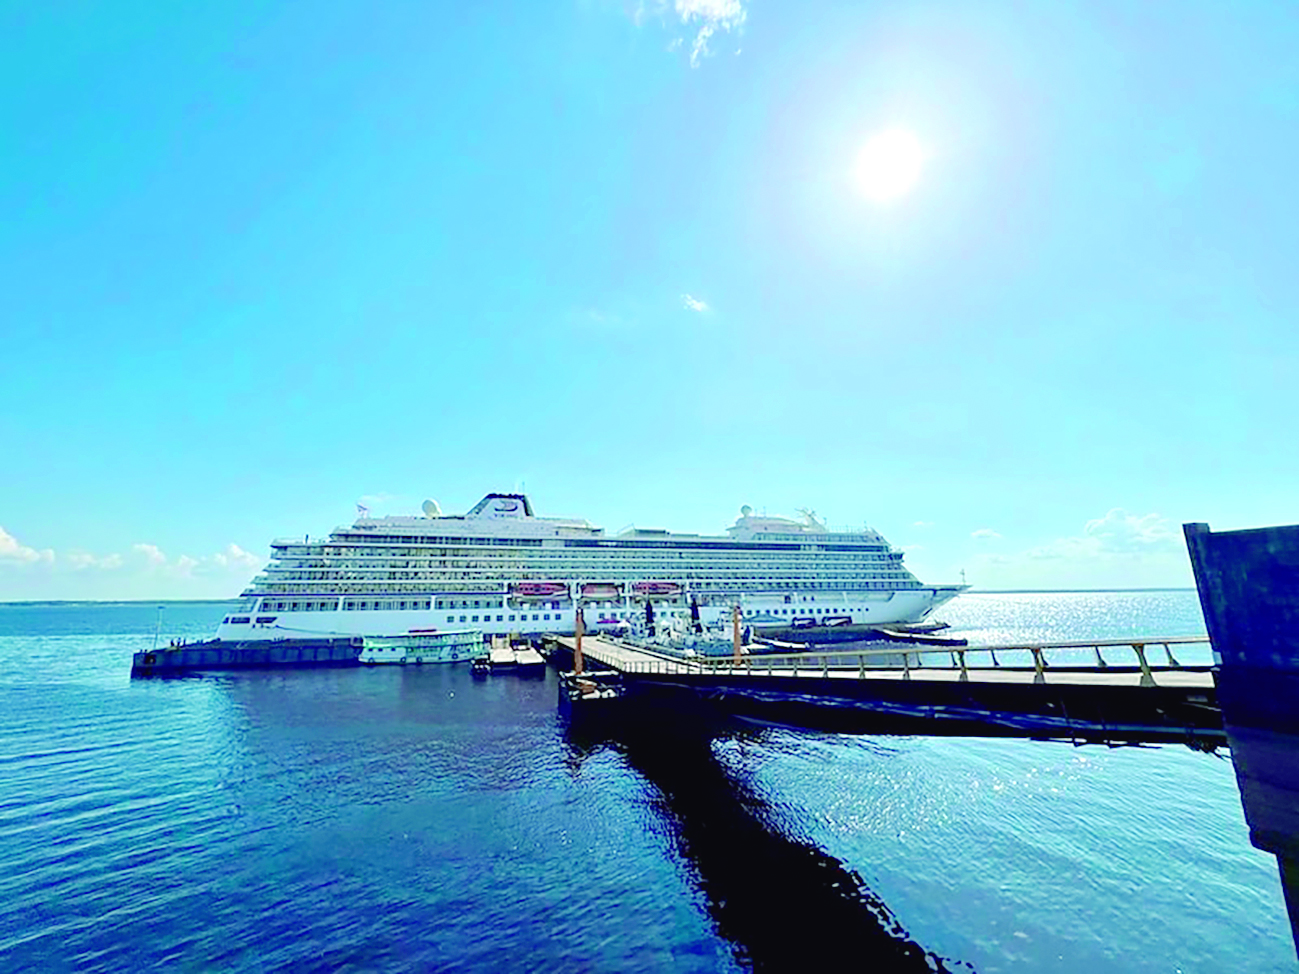 Cruise season generates almost R million in revenue for Manaus